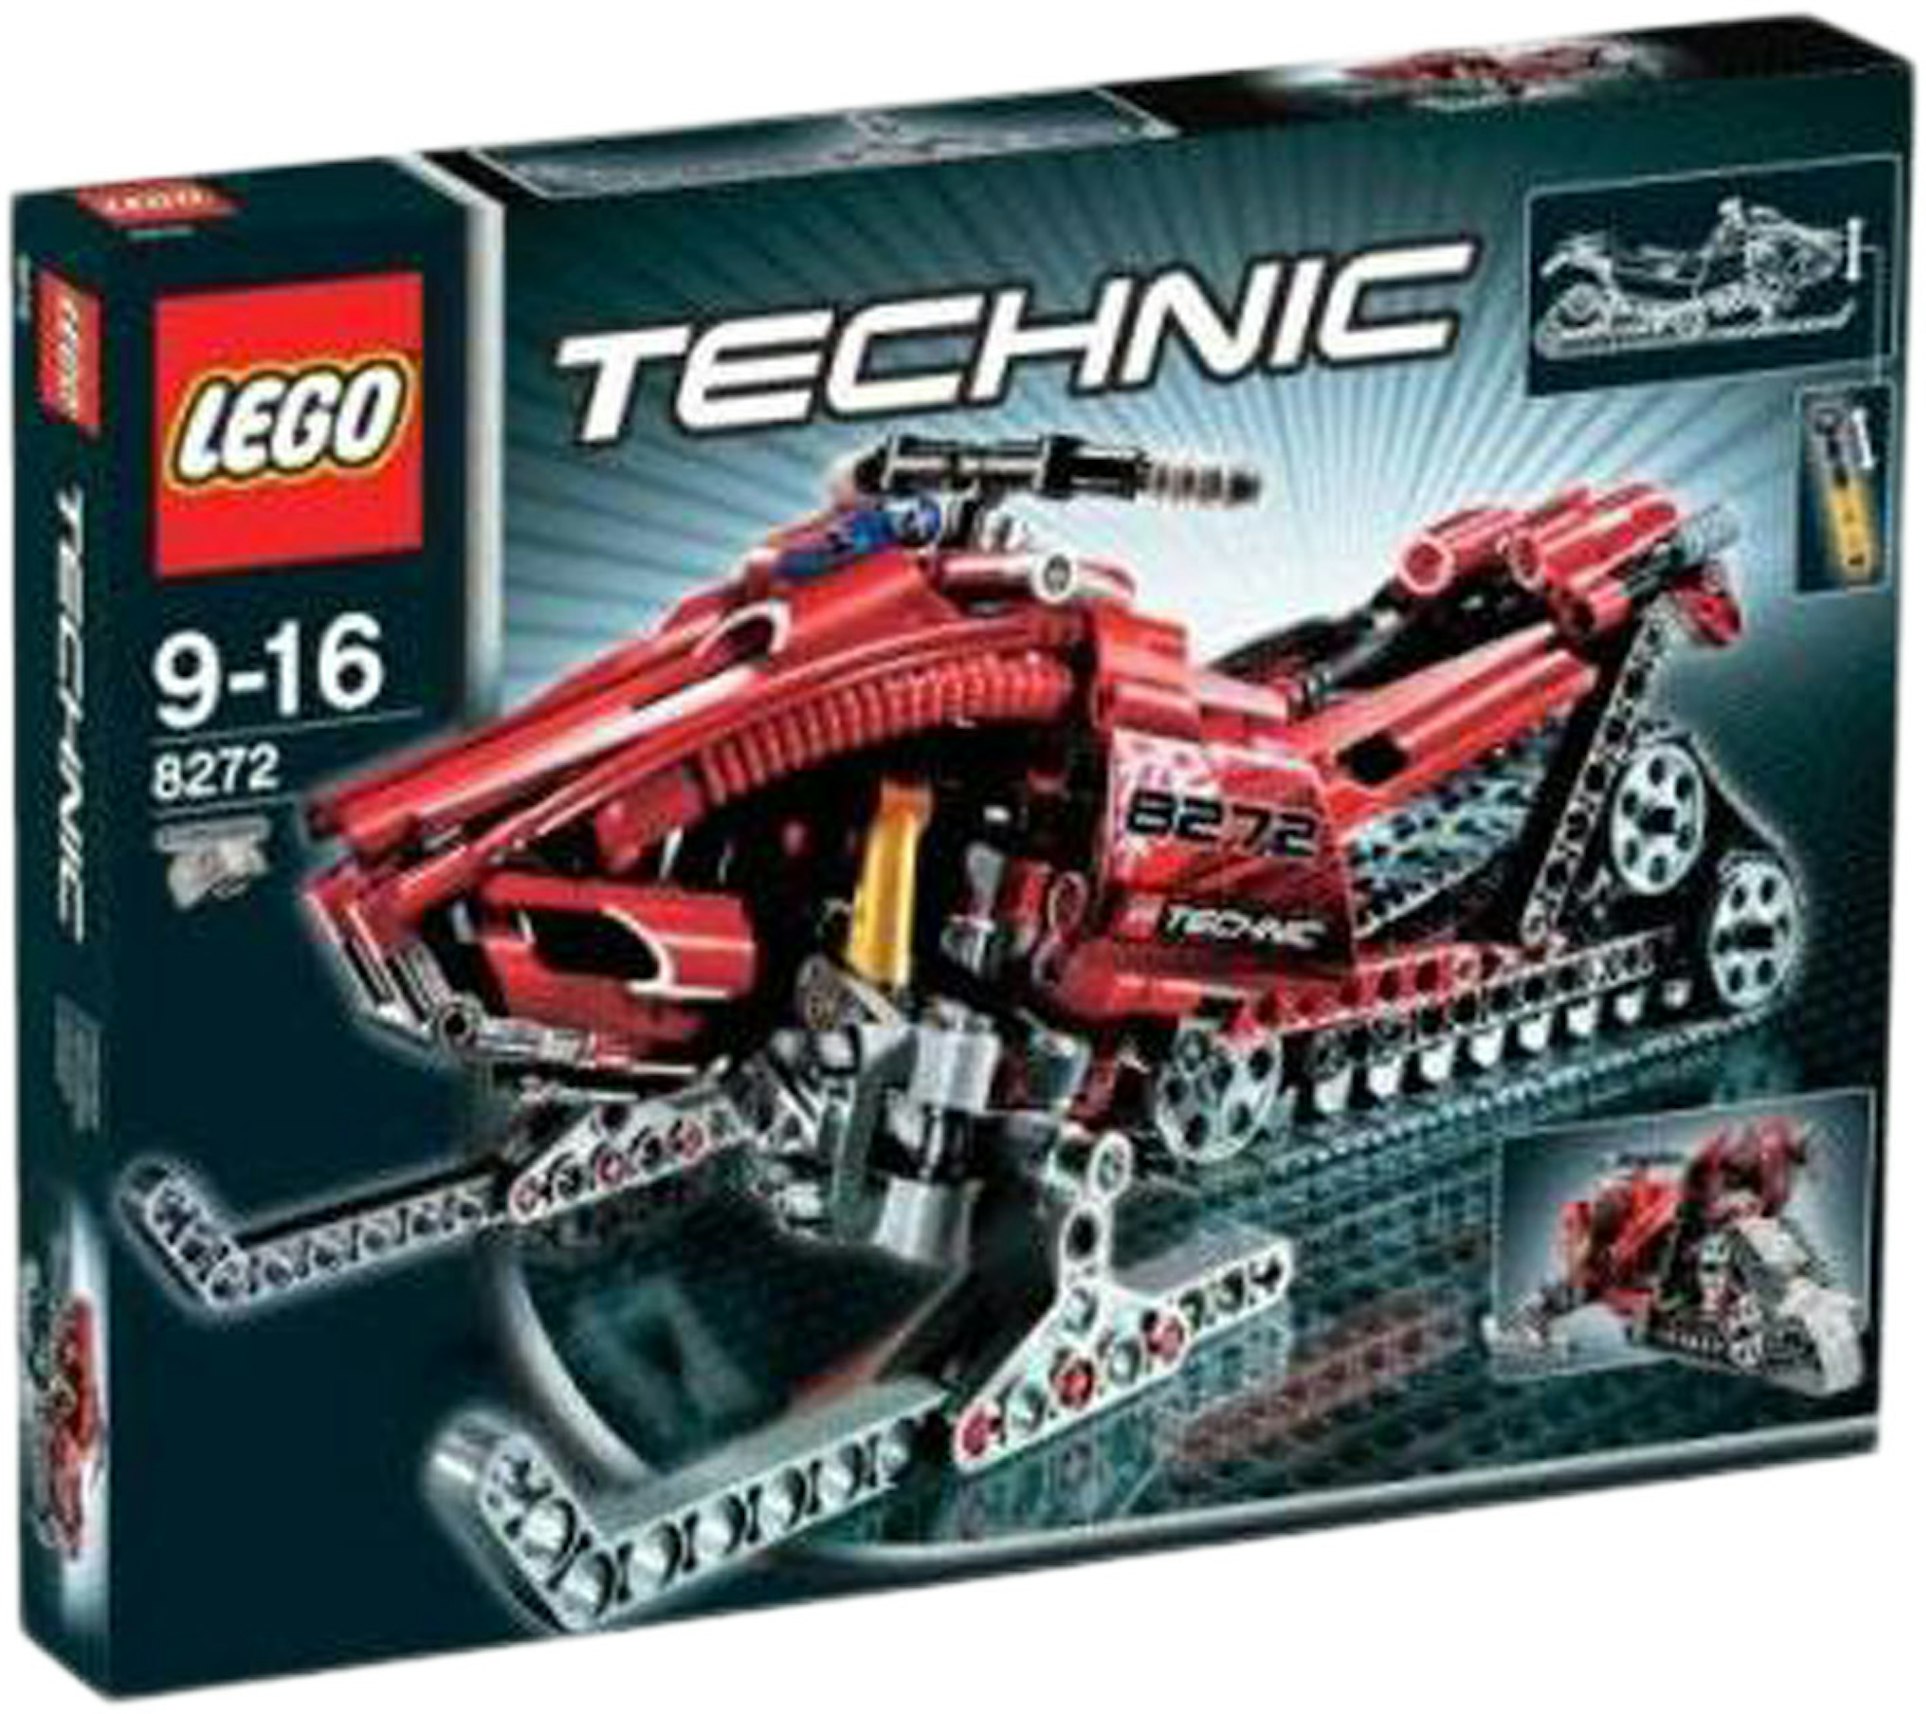 LEGO Technic Mobile 8272 - US